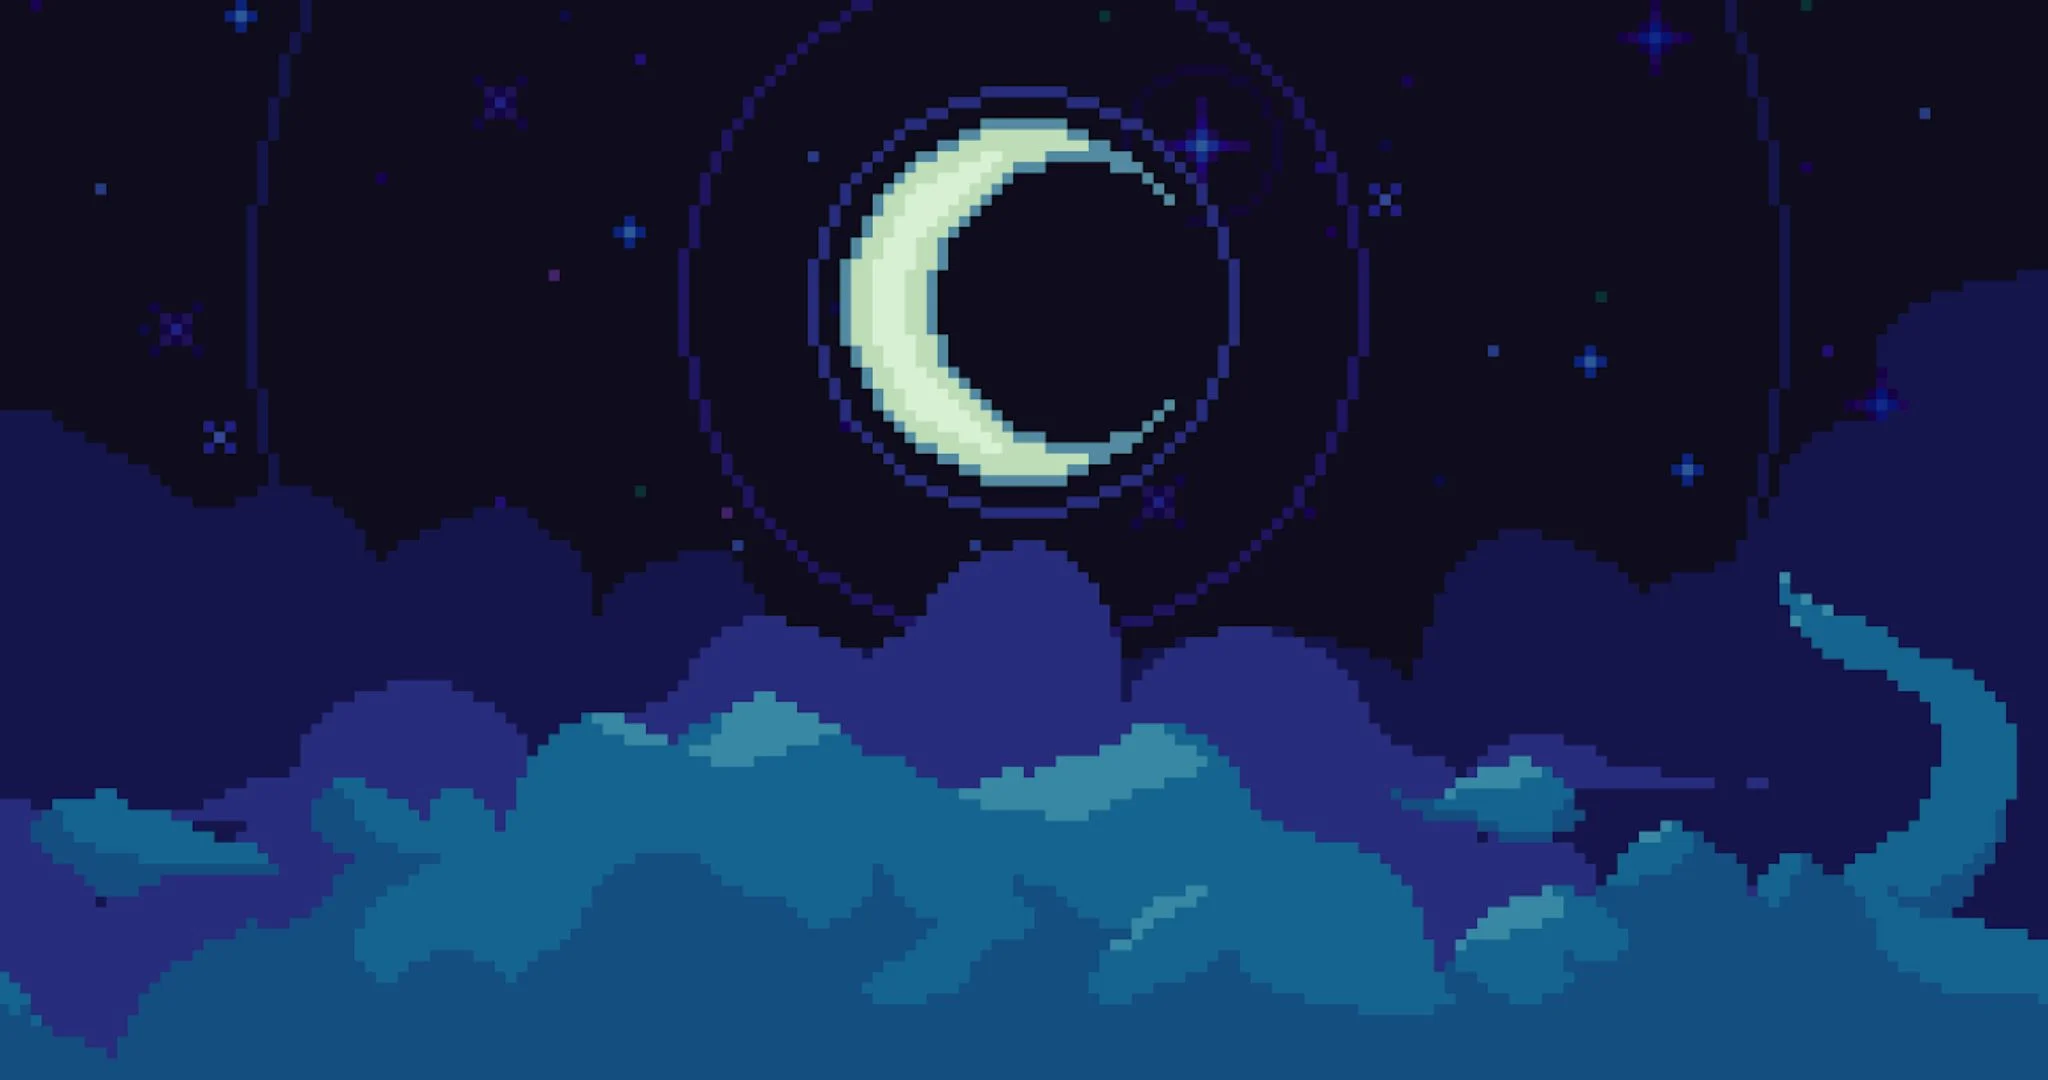 Moonbirds night effect. Source: Moonbirds